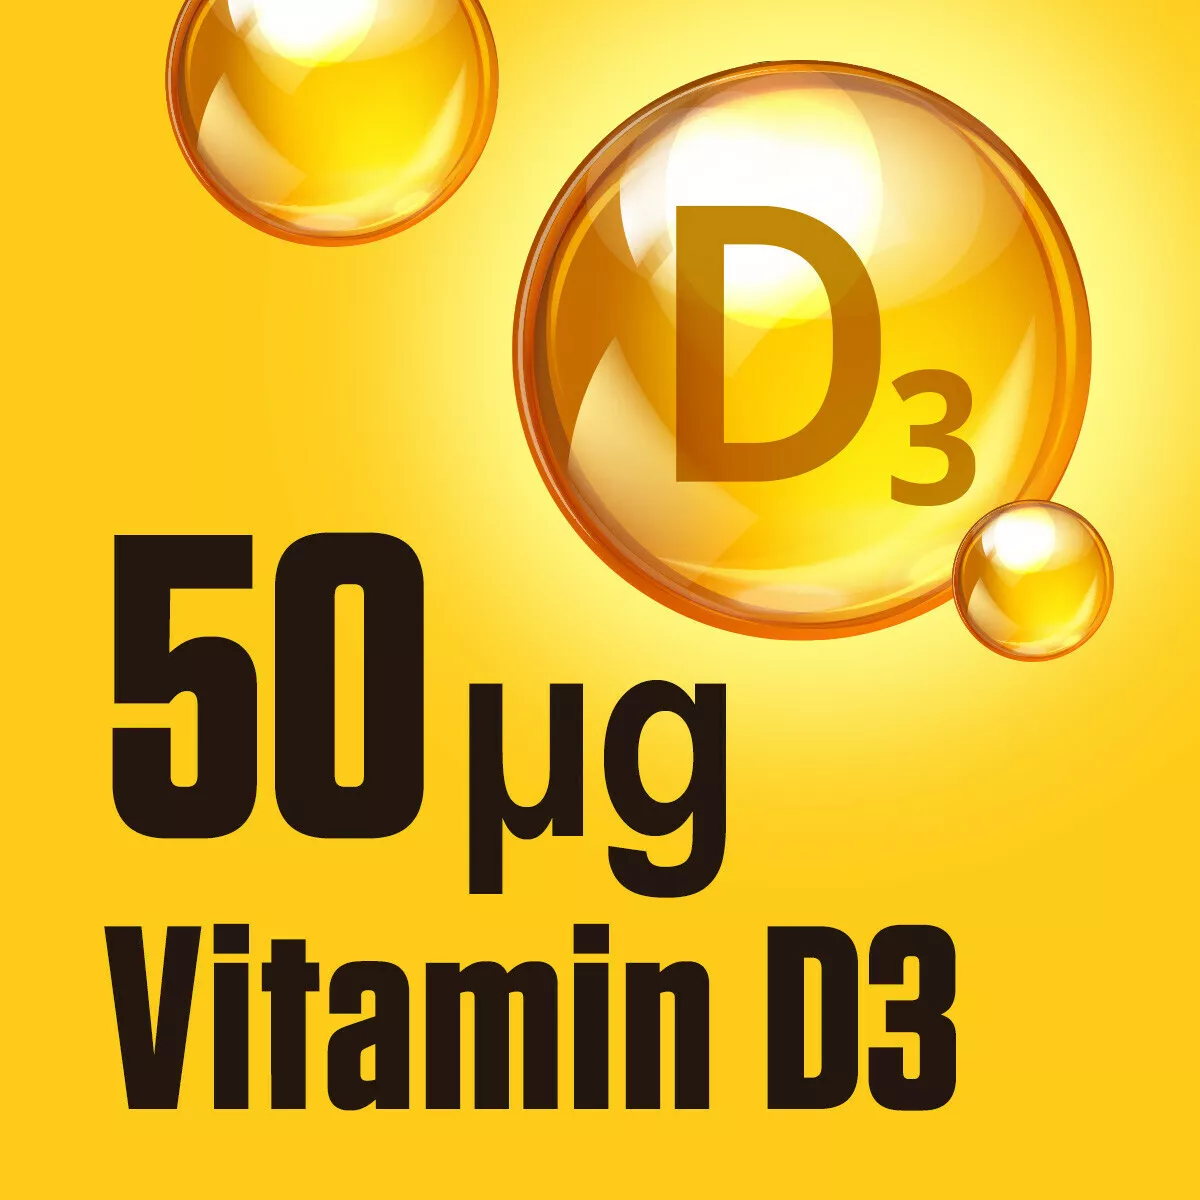 D3-vitamin (120 kapslar)